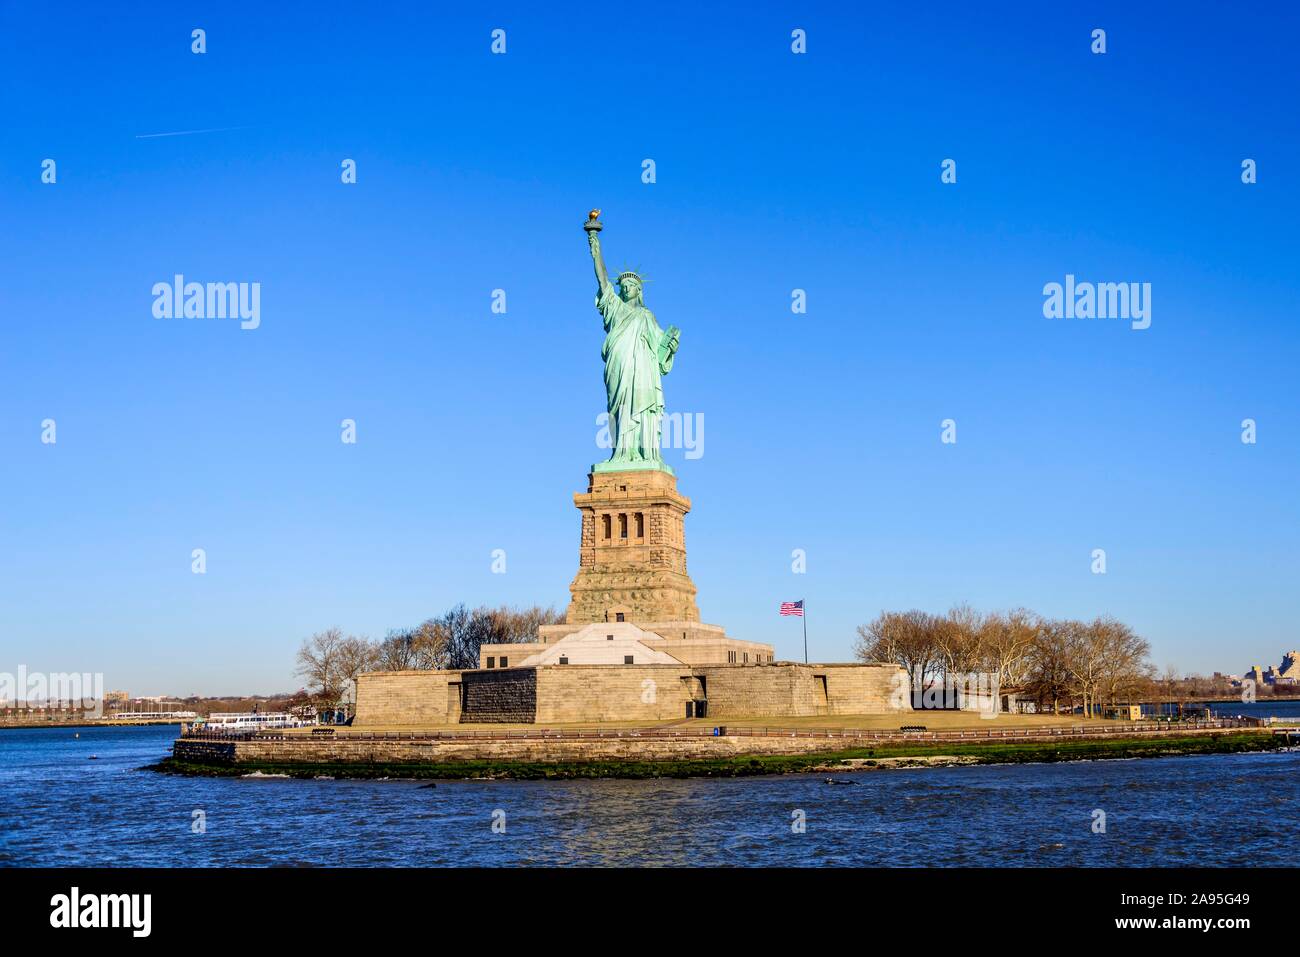 Statue de la liberté, Monument National de la Statue de la liberté, Liberty Island, New York City, New York State, USA Banque D'Images